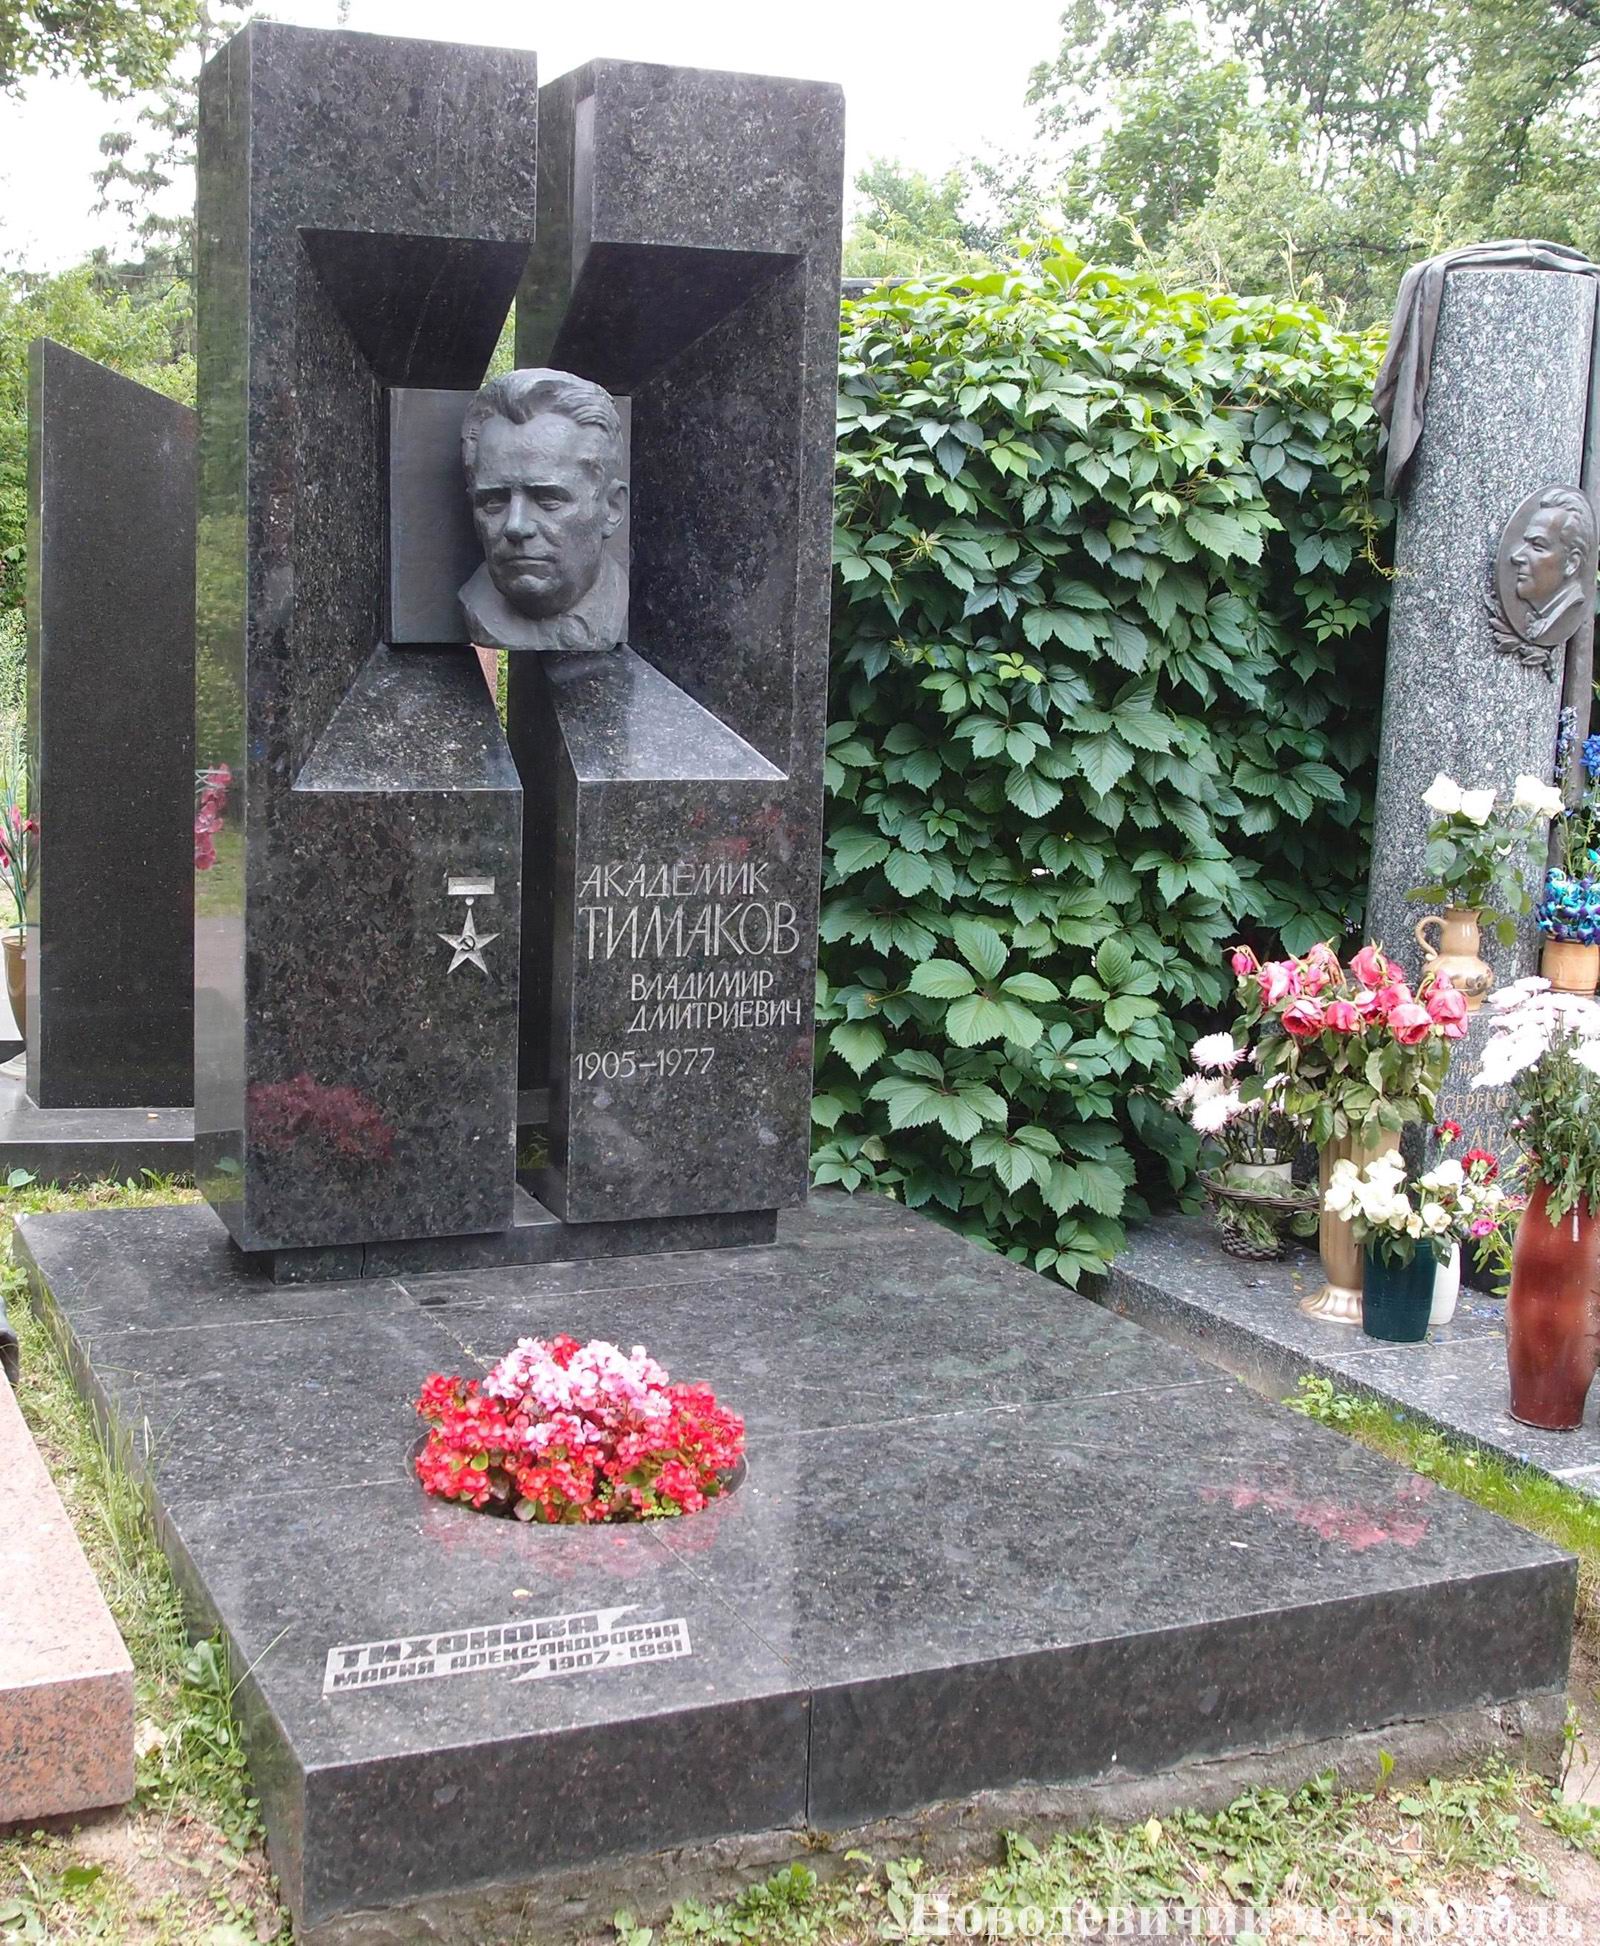 Памятник на могиле Тимакова В.Д. (1905-1977), ск. И.Бродский, арх. И.Покровский, на Новодевичьем кладбище (9-2-3). Нажмите левую кнопку мыши, чтобы увидеть другой вариант.